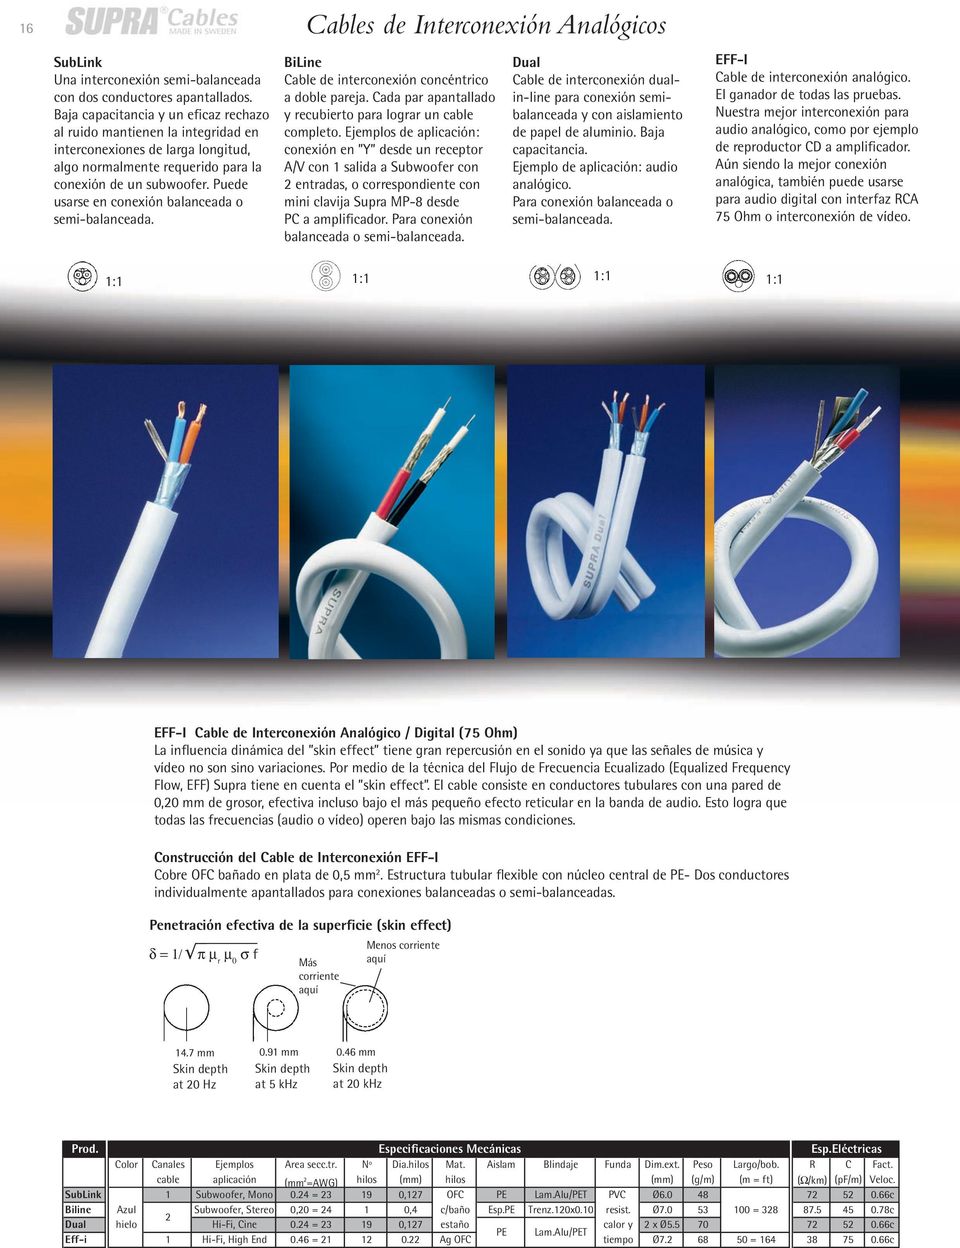 Puede usarse en conexión balanceada o semi-balanceada. BiLine Cable de interconexión concéntrico a doble pareja. Cada par apantallado y recubierto para lograr un cable completo.